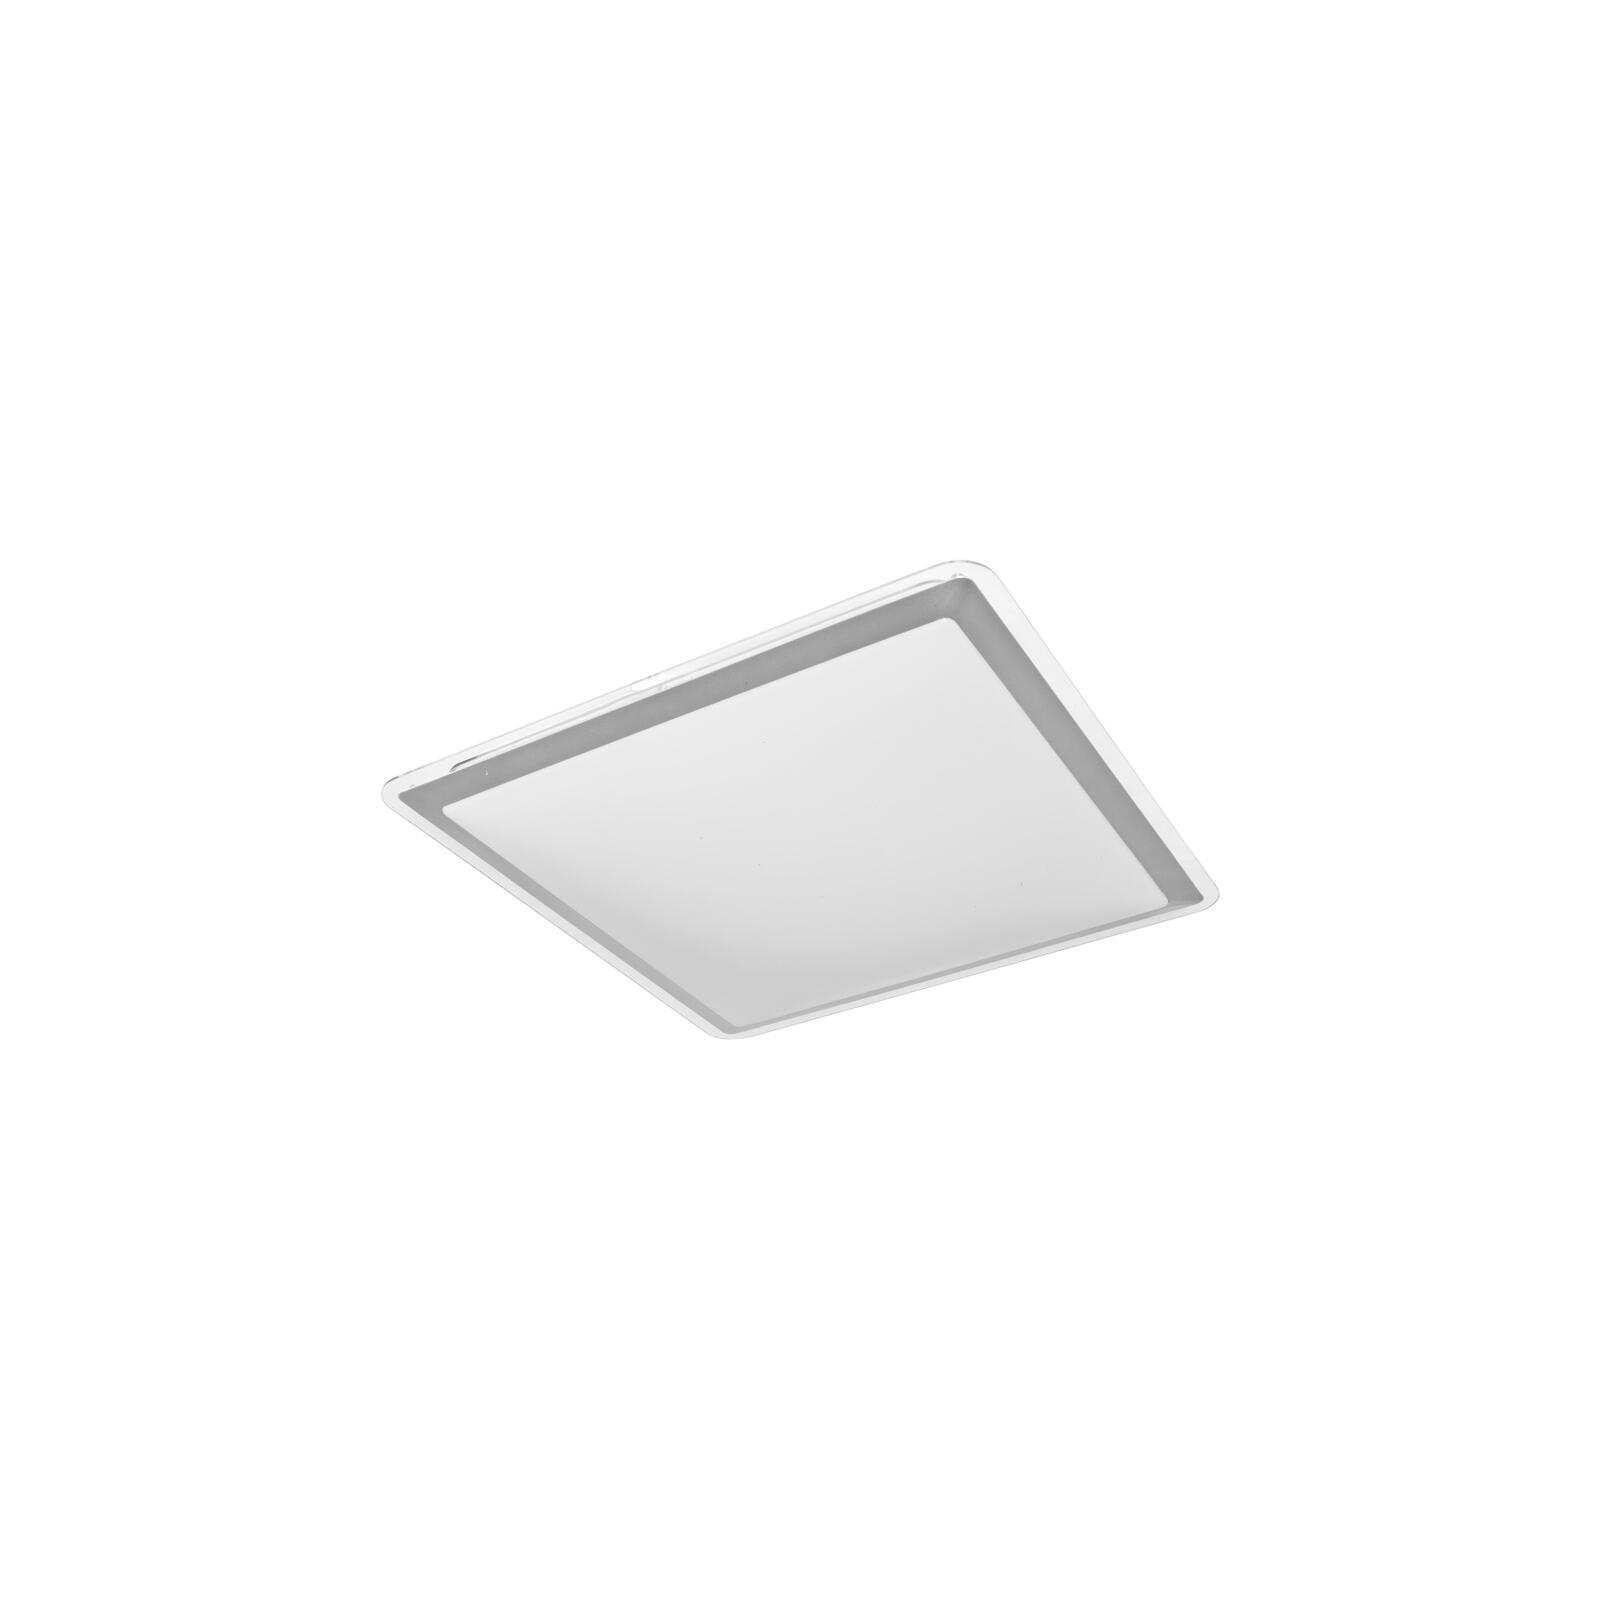 Badezimmer LED Deckenleuchte Onlineshop Leuchten IP44 & warmweiß 43x43 - silber eckig Lampen cm